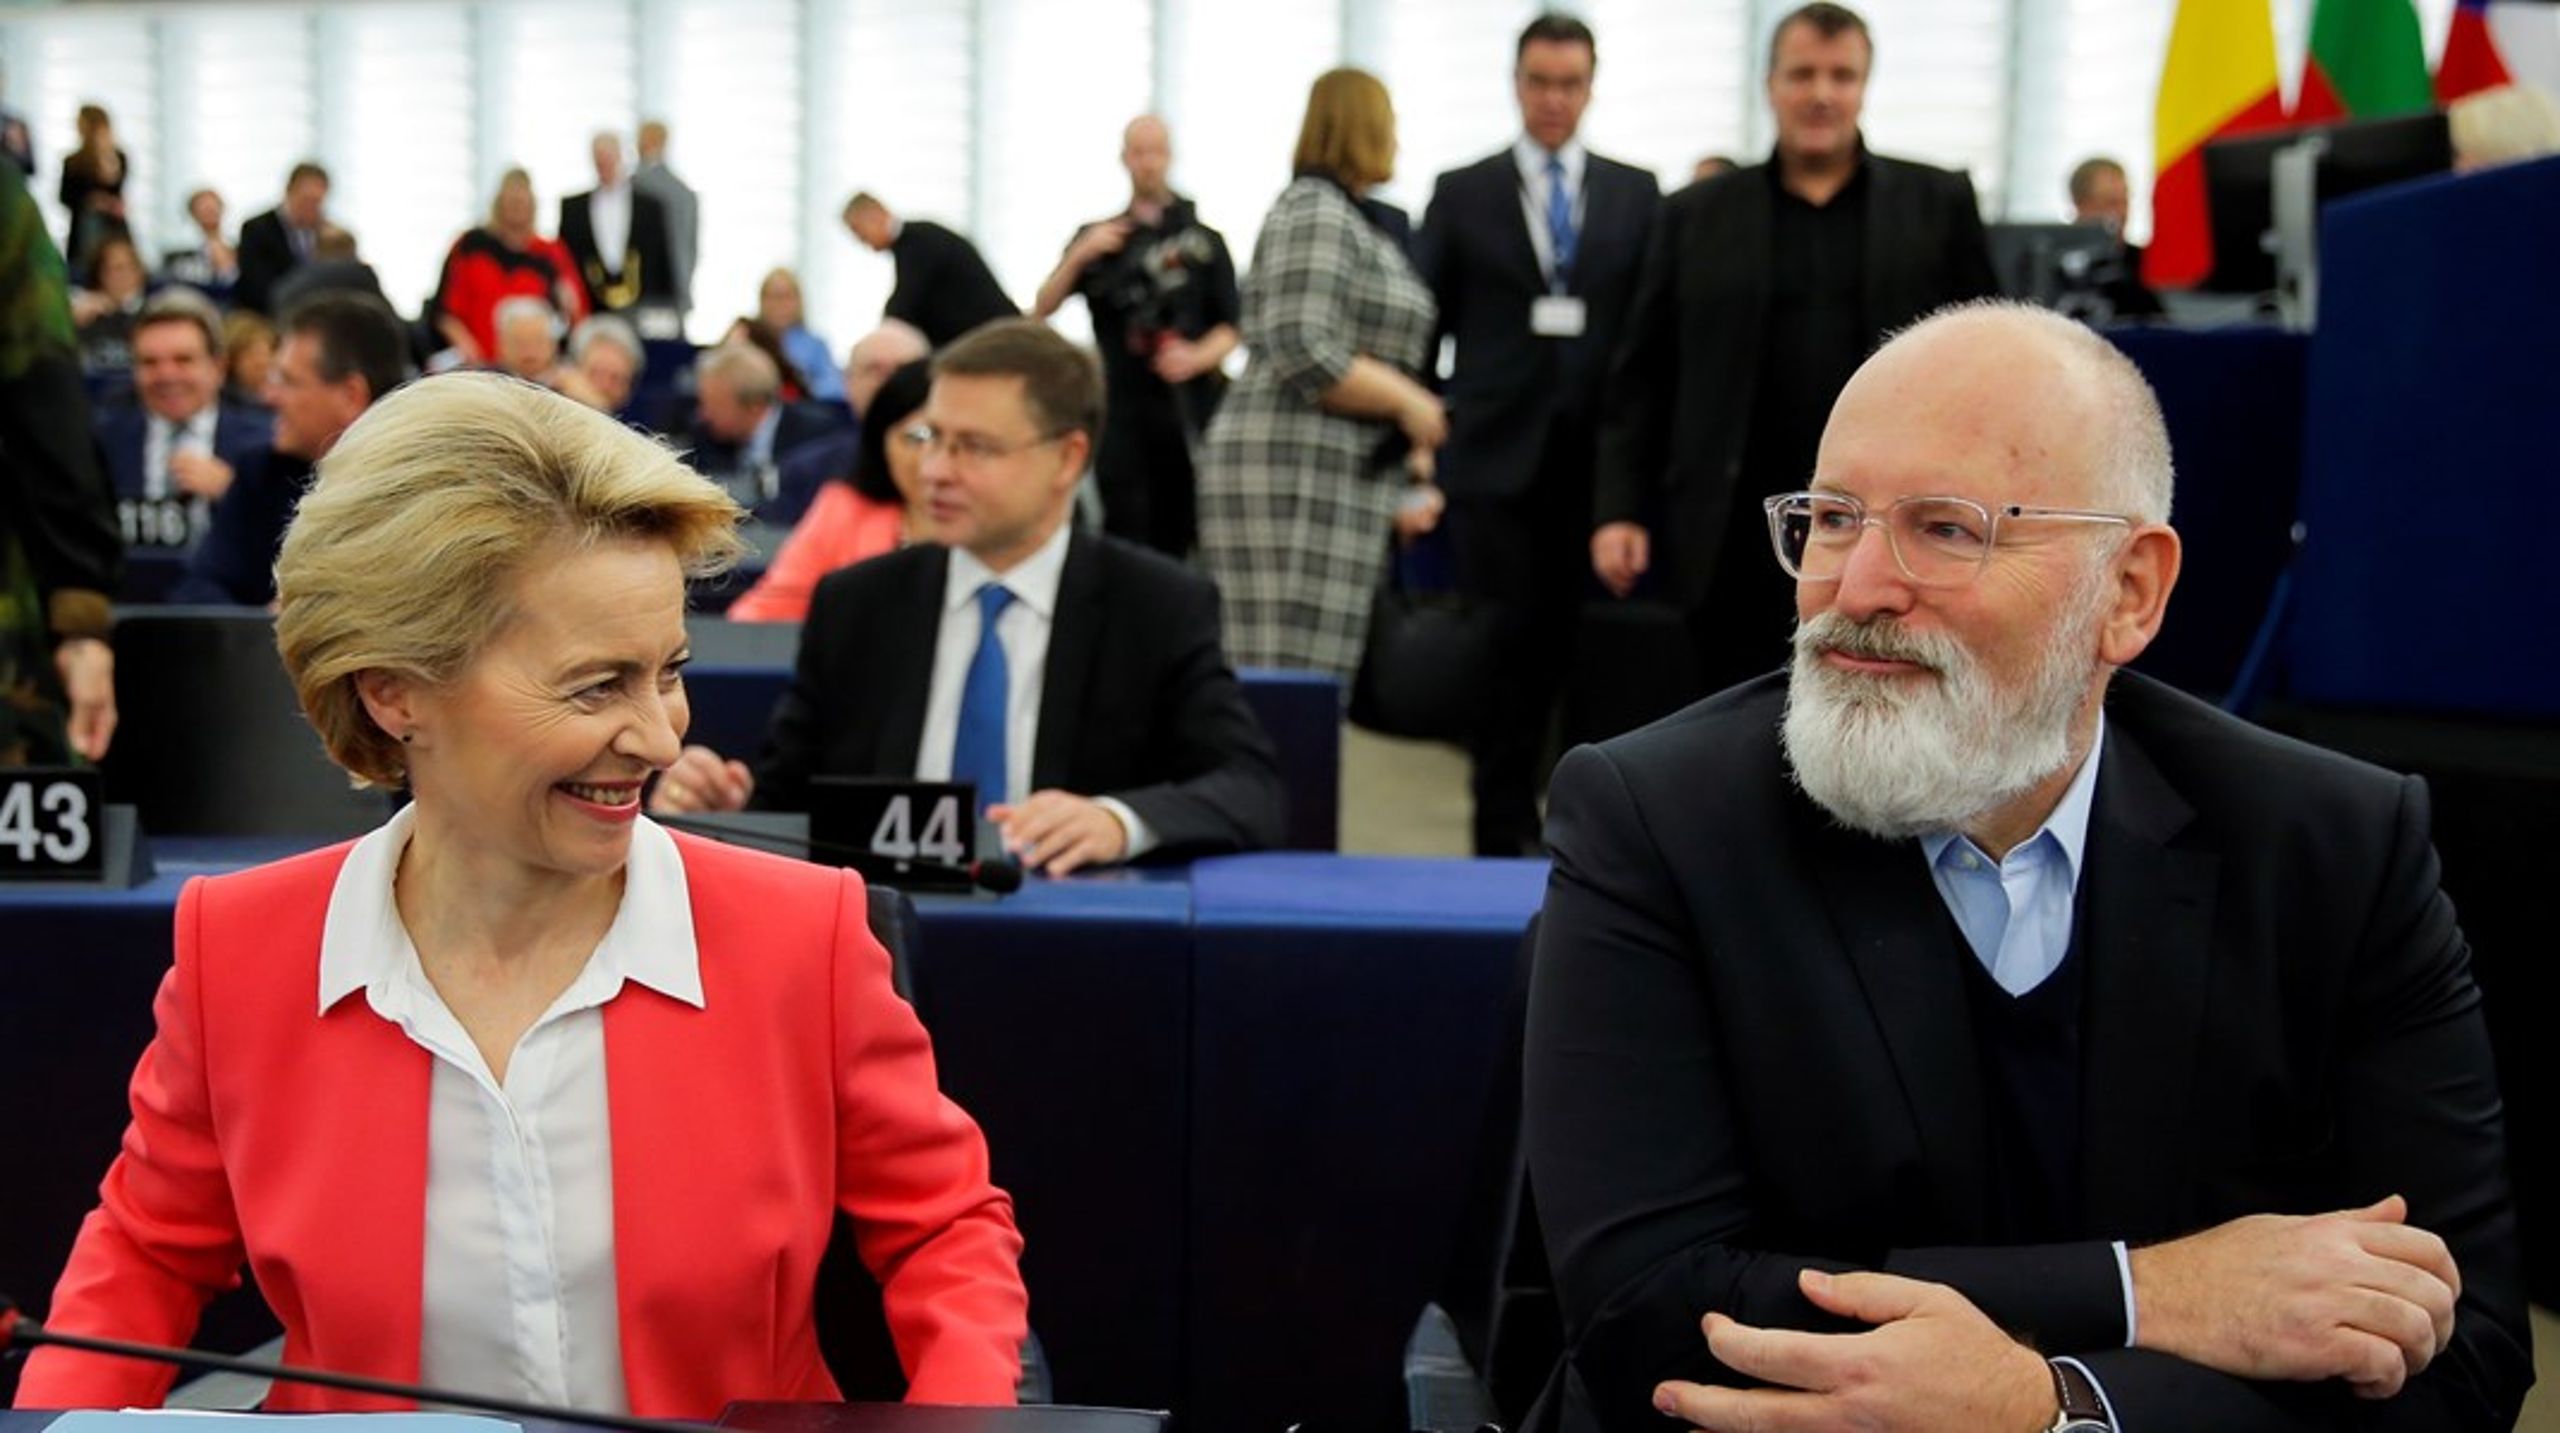 Frans Timmermanns er EU-kommissionens vicepræsident og ansvarlig for at styre EU’s klimapolitik. Onsdag præsenterede han sammen med formand for Kommissionen, Ursula von der Leyen, et nyt udspil, der skal sikre, at EU når målsætningen for at nedsætte deres CO2-udslip med 55 procent inden 2030.